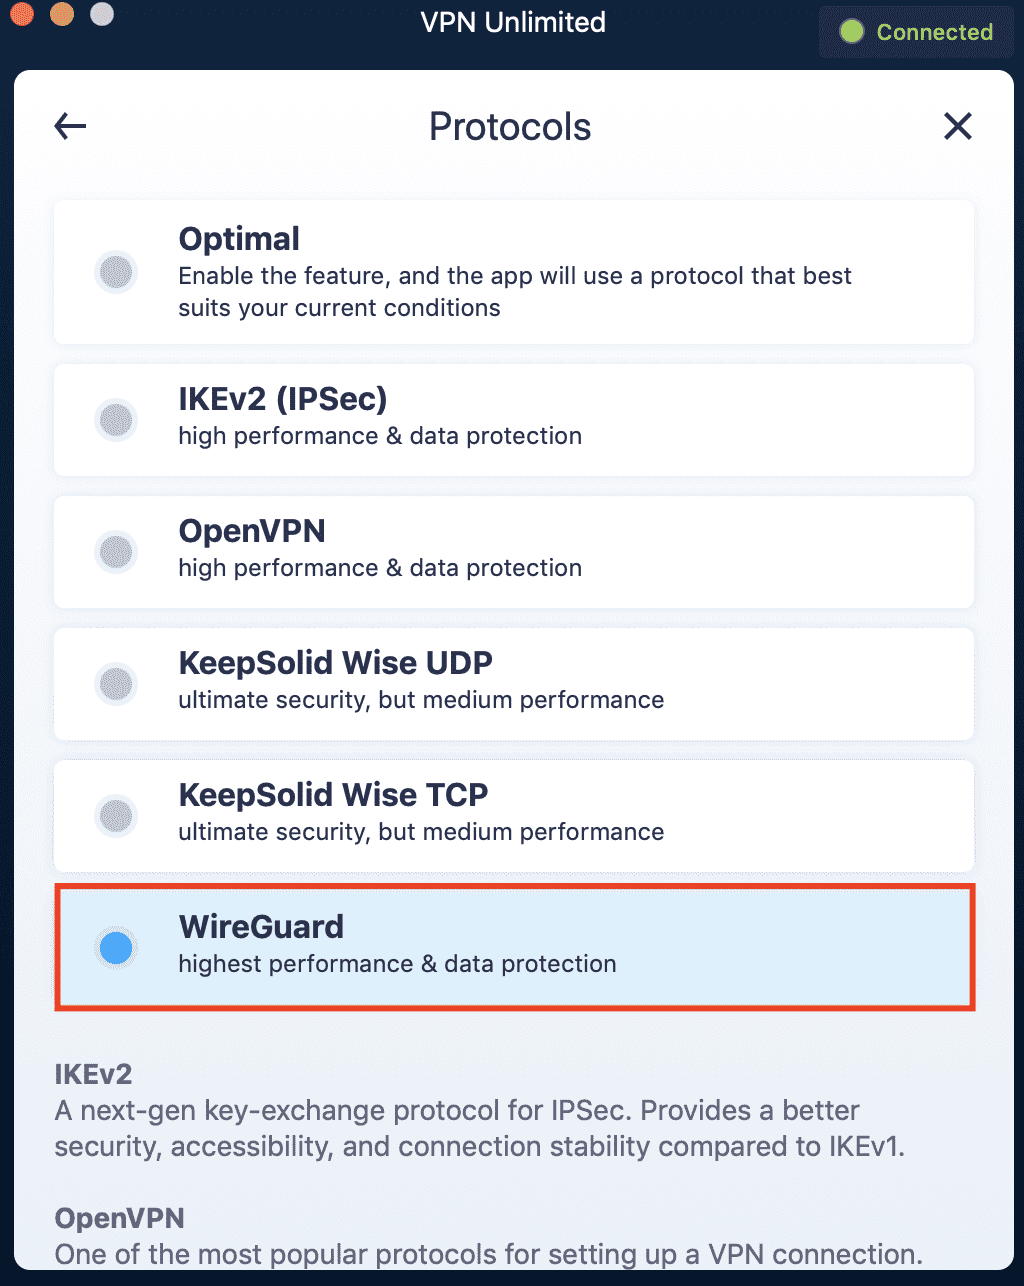 WireGuard VPN protocol in KeepSolid VPN Unlimited app